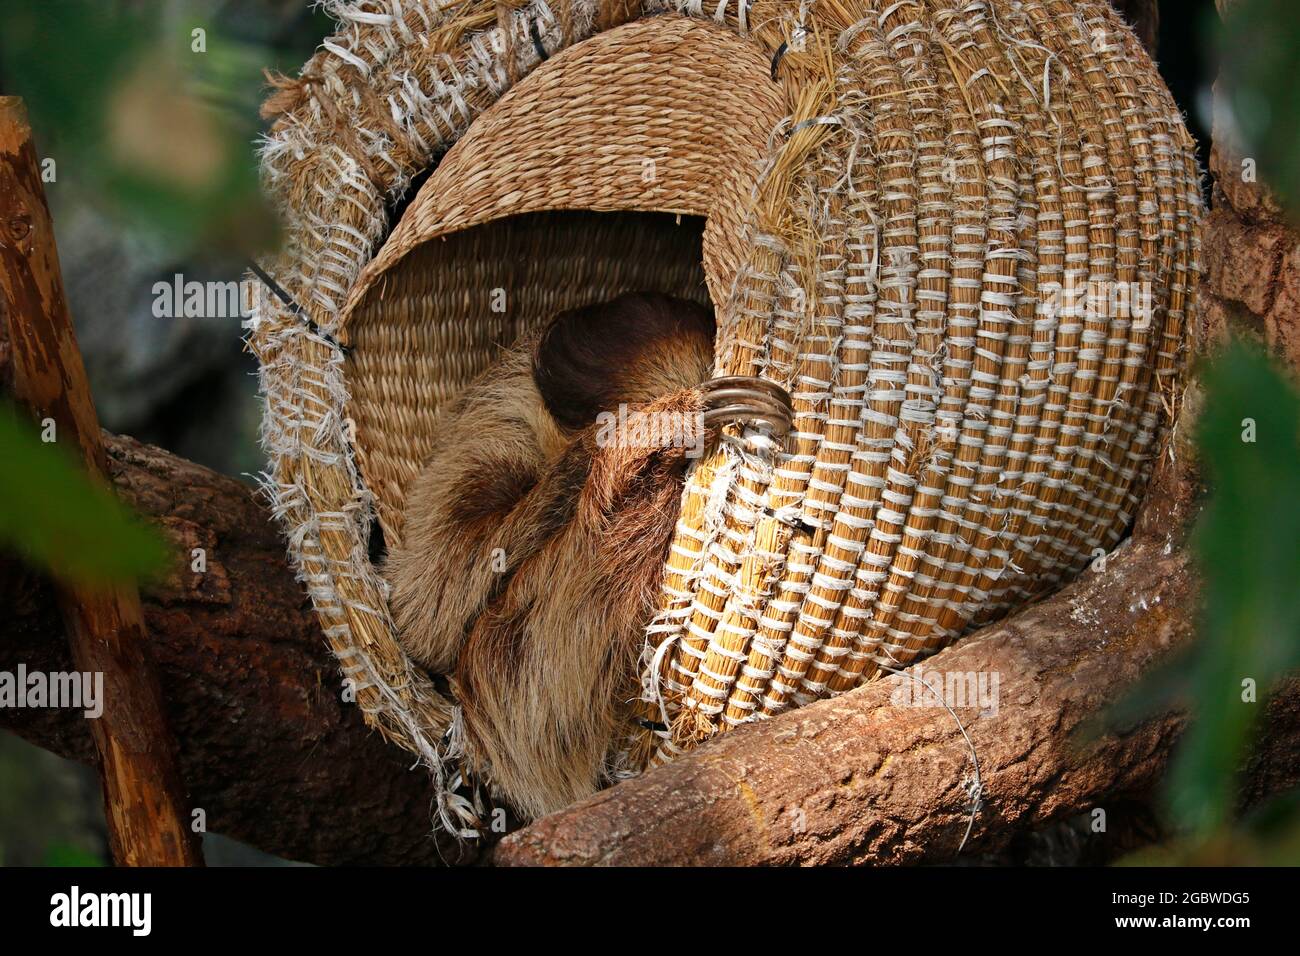 Le bradipi sono un gruppo di mammiferi xenartrani arborei neotropici, stuoia di tempo che pende a testa in giù, e il suo sonno in un cesto Foto Stock